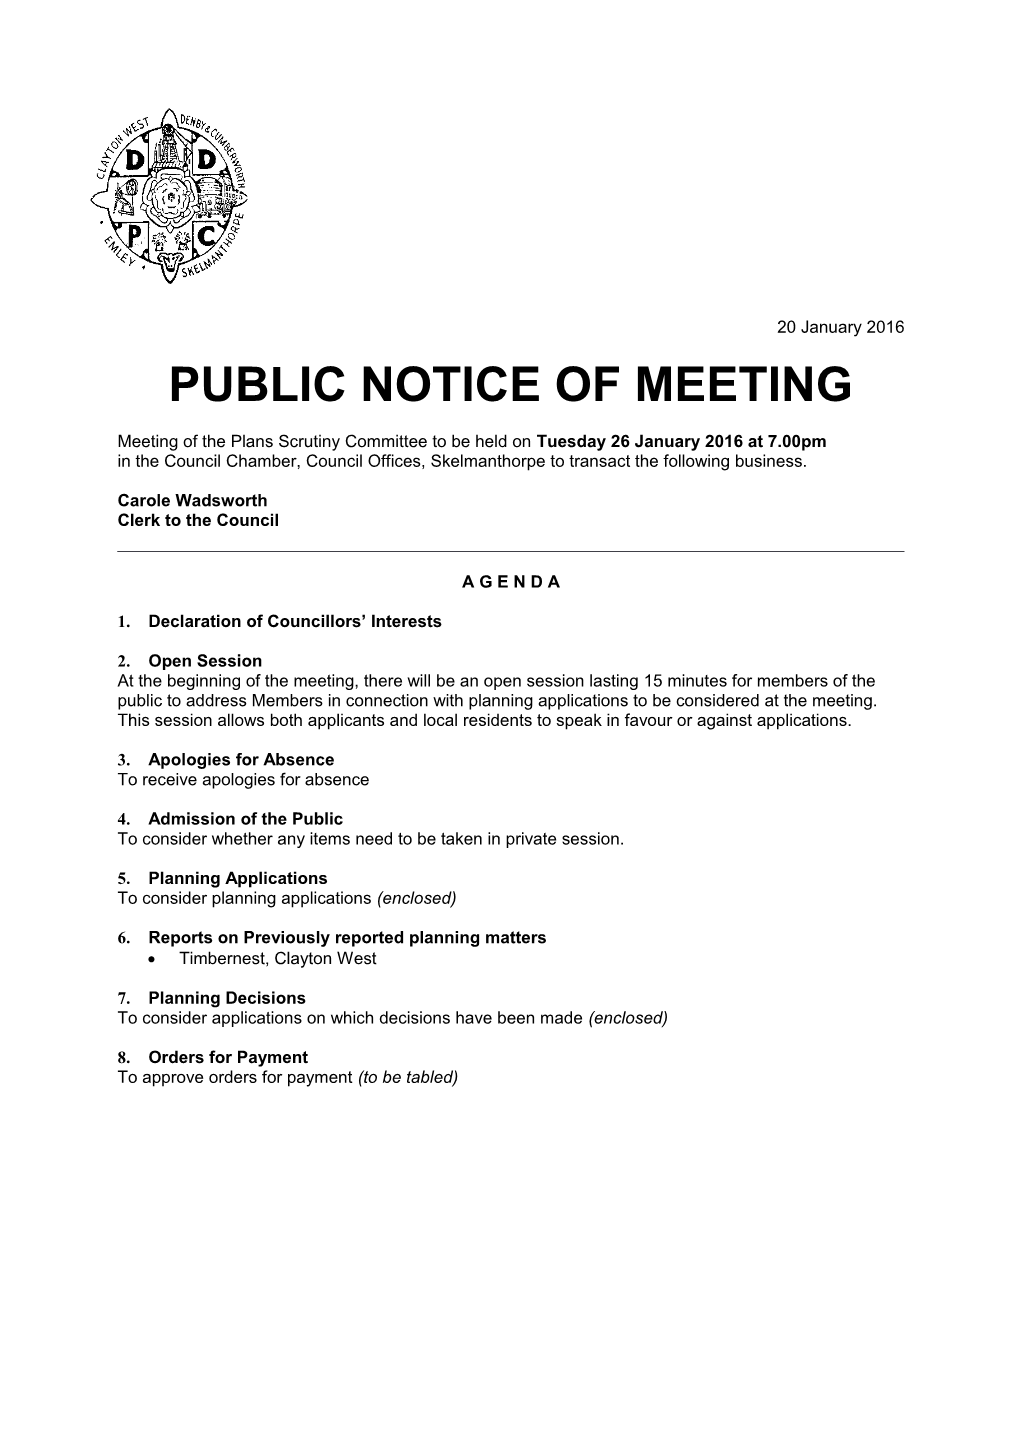 Public Notice of Meeting